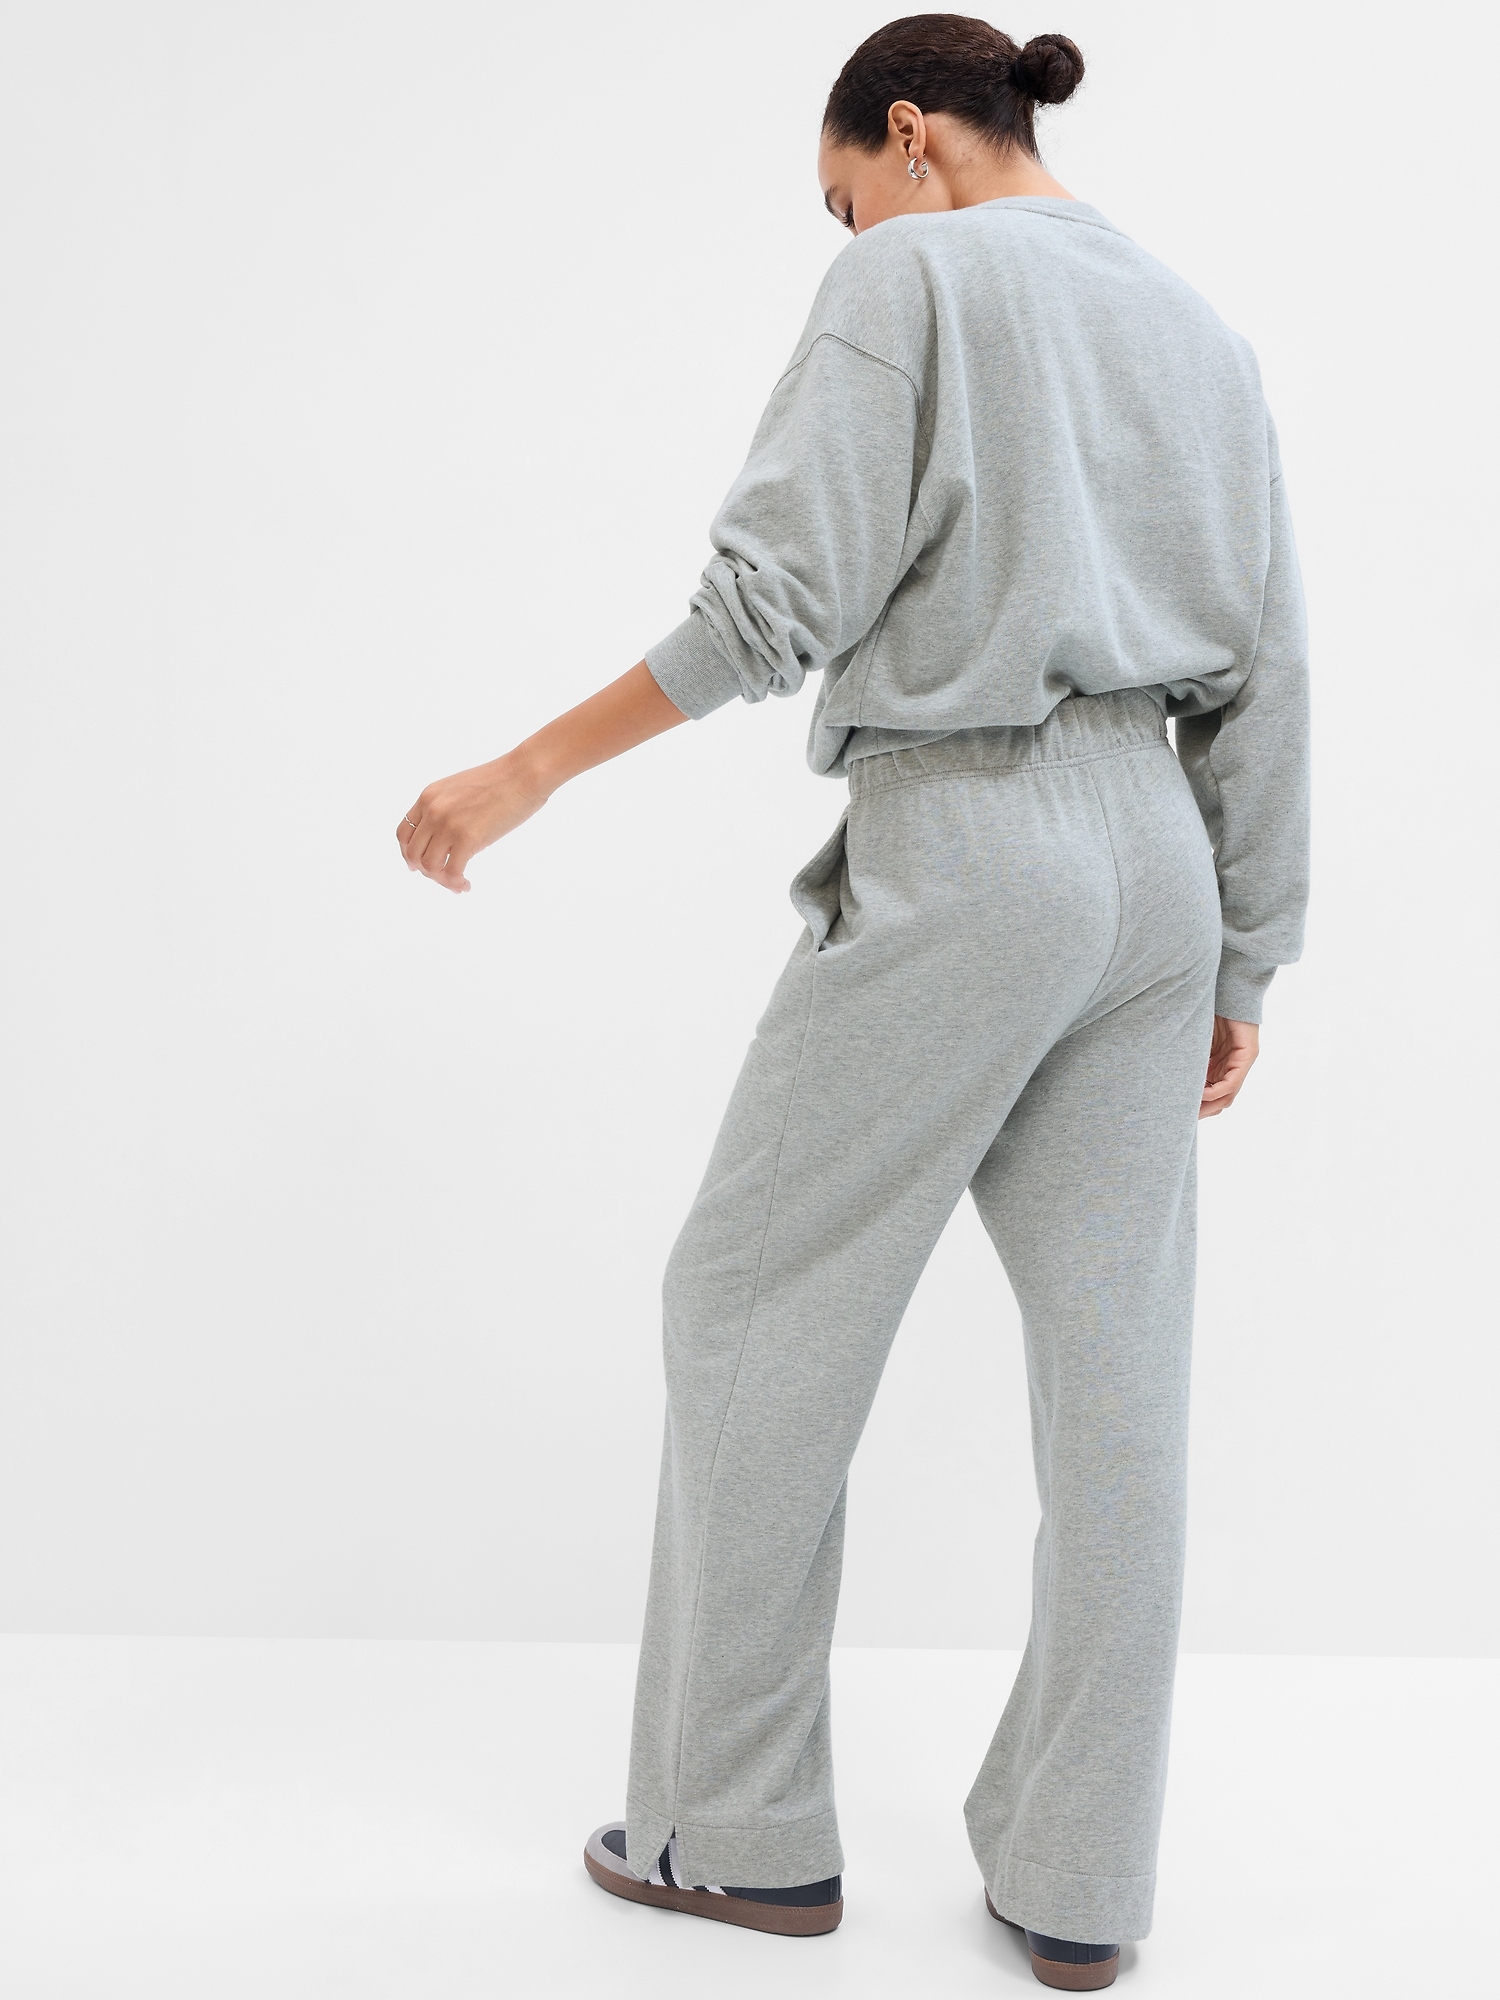 Women's Fleece Lined Pants With Pockets Straight Leg Trousers Winter  Comfort Sweatpants Loungewear